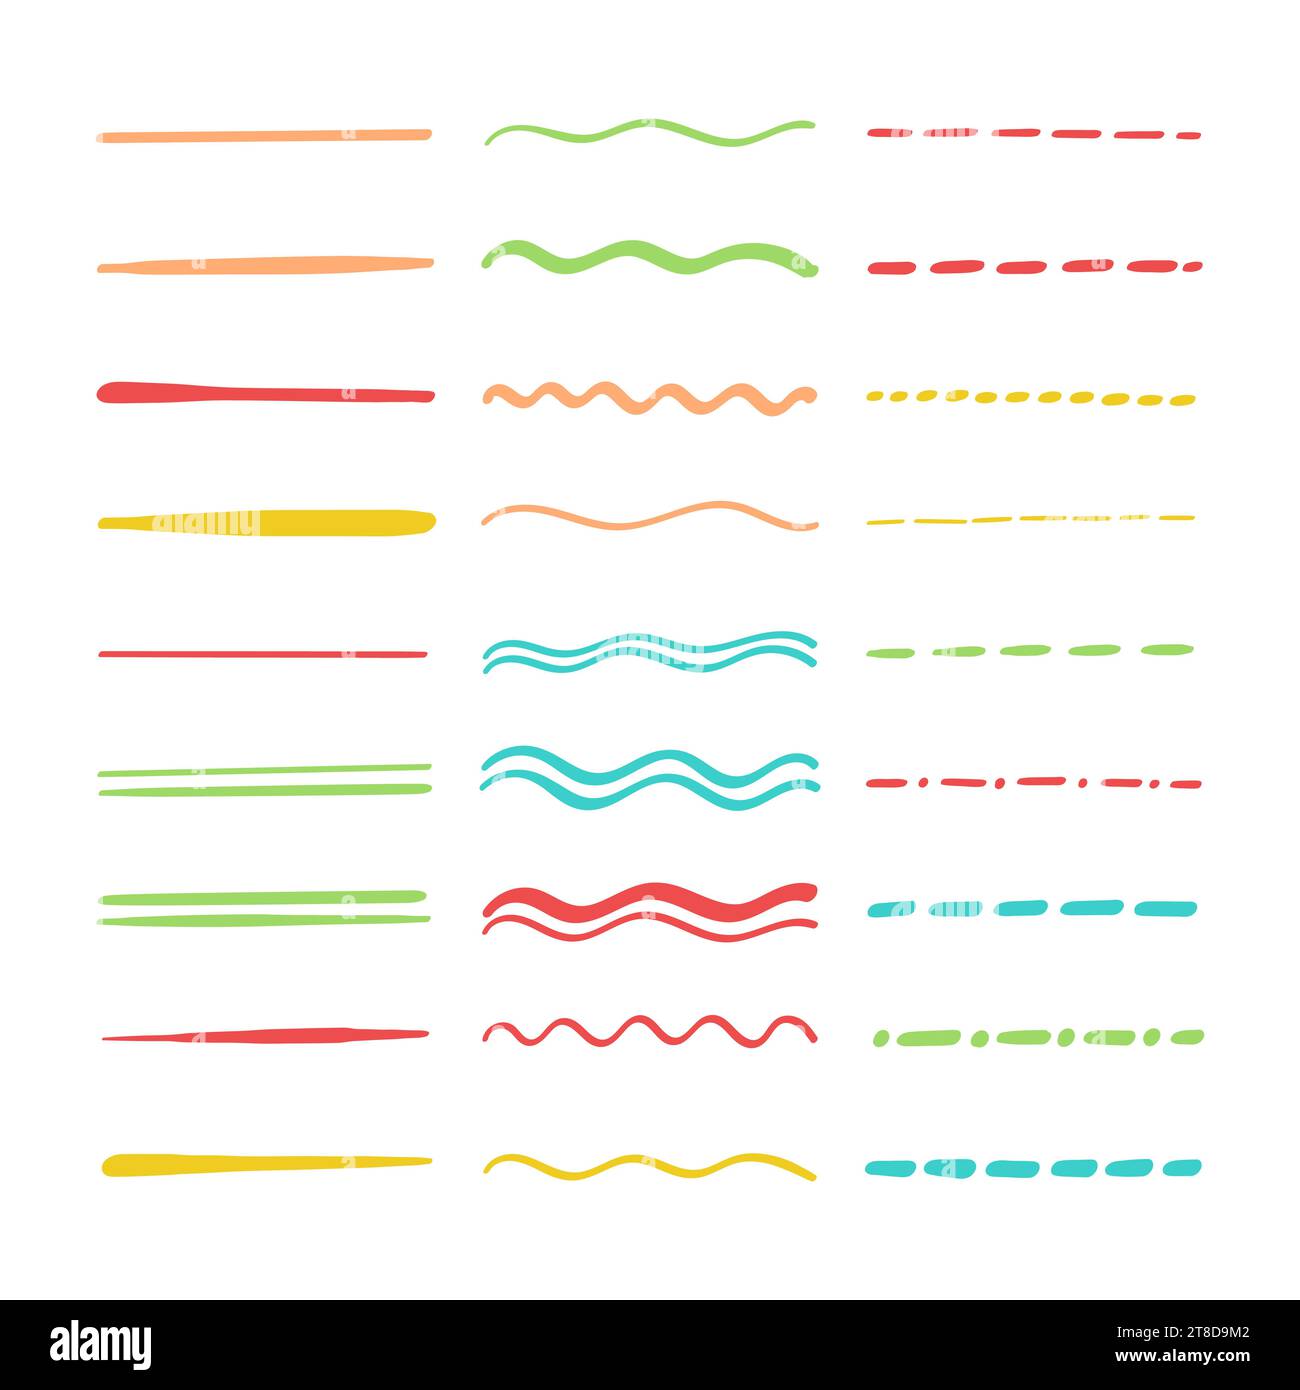 Collezione di sottolineature multicolore barrate. le linee ondulate e punteggiate colorate dei vari doodle mettono in risalto. Strisce tracciate a mano orizzontali, Illustrazione Vettoriale